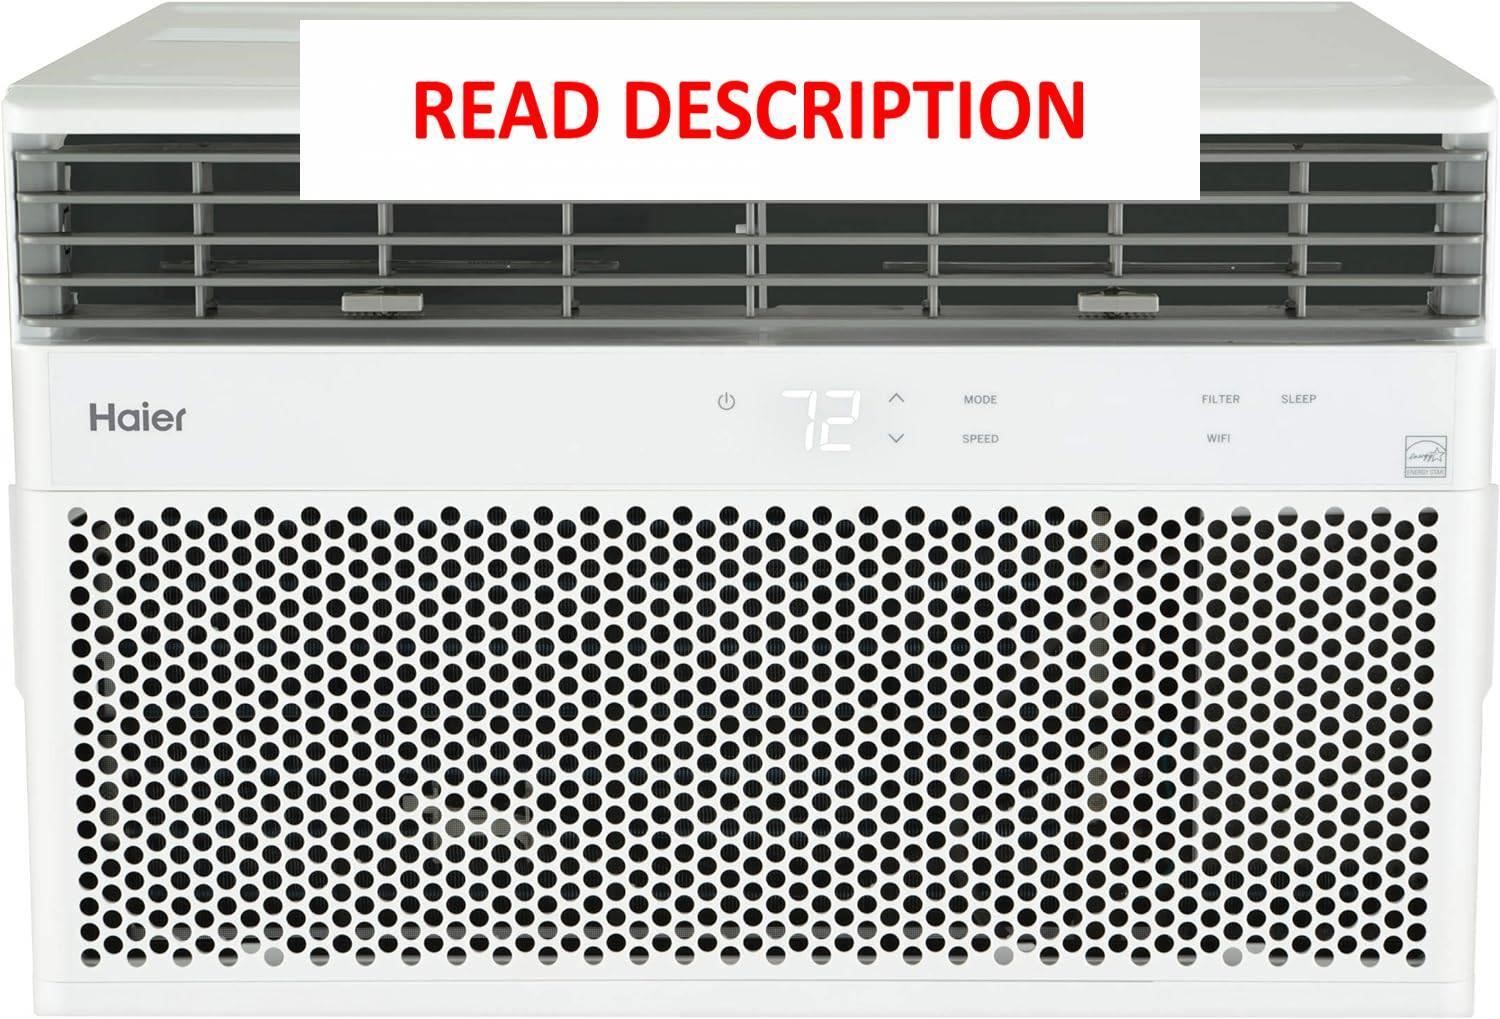 Haier 14000 BTU Wi-Fi Window Air Conditioner